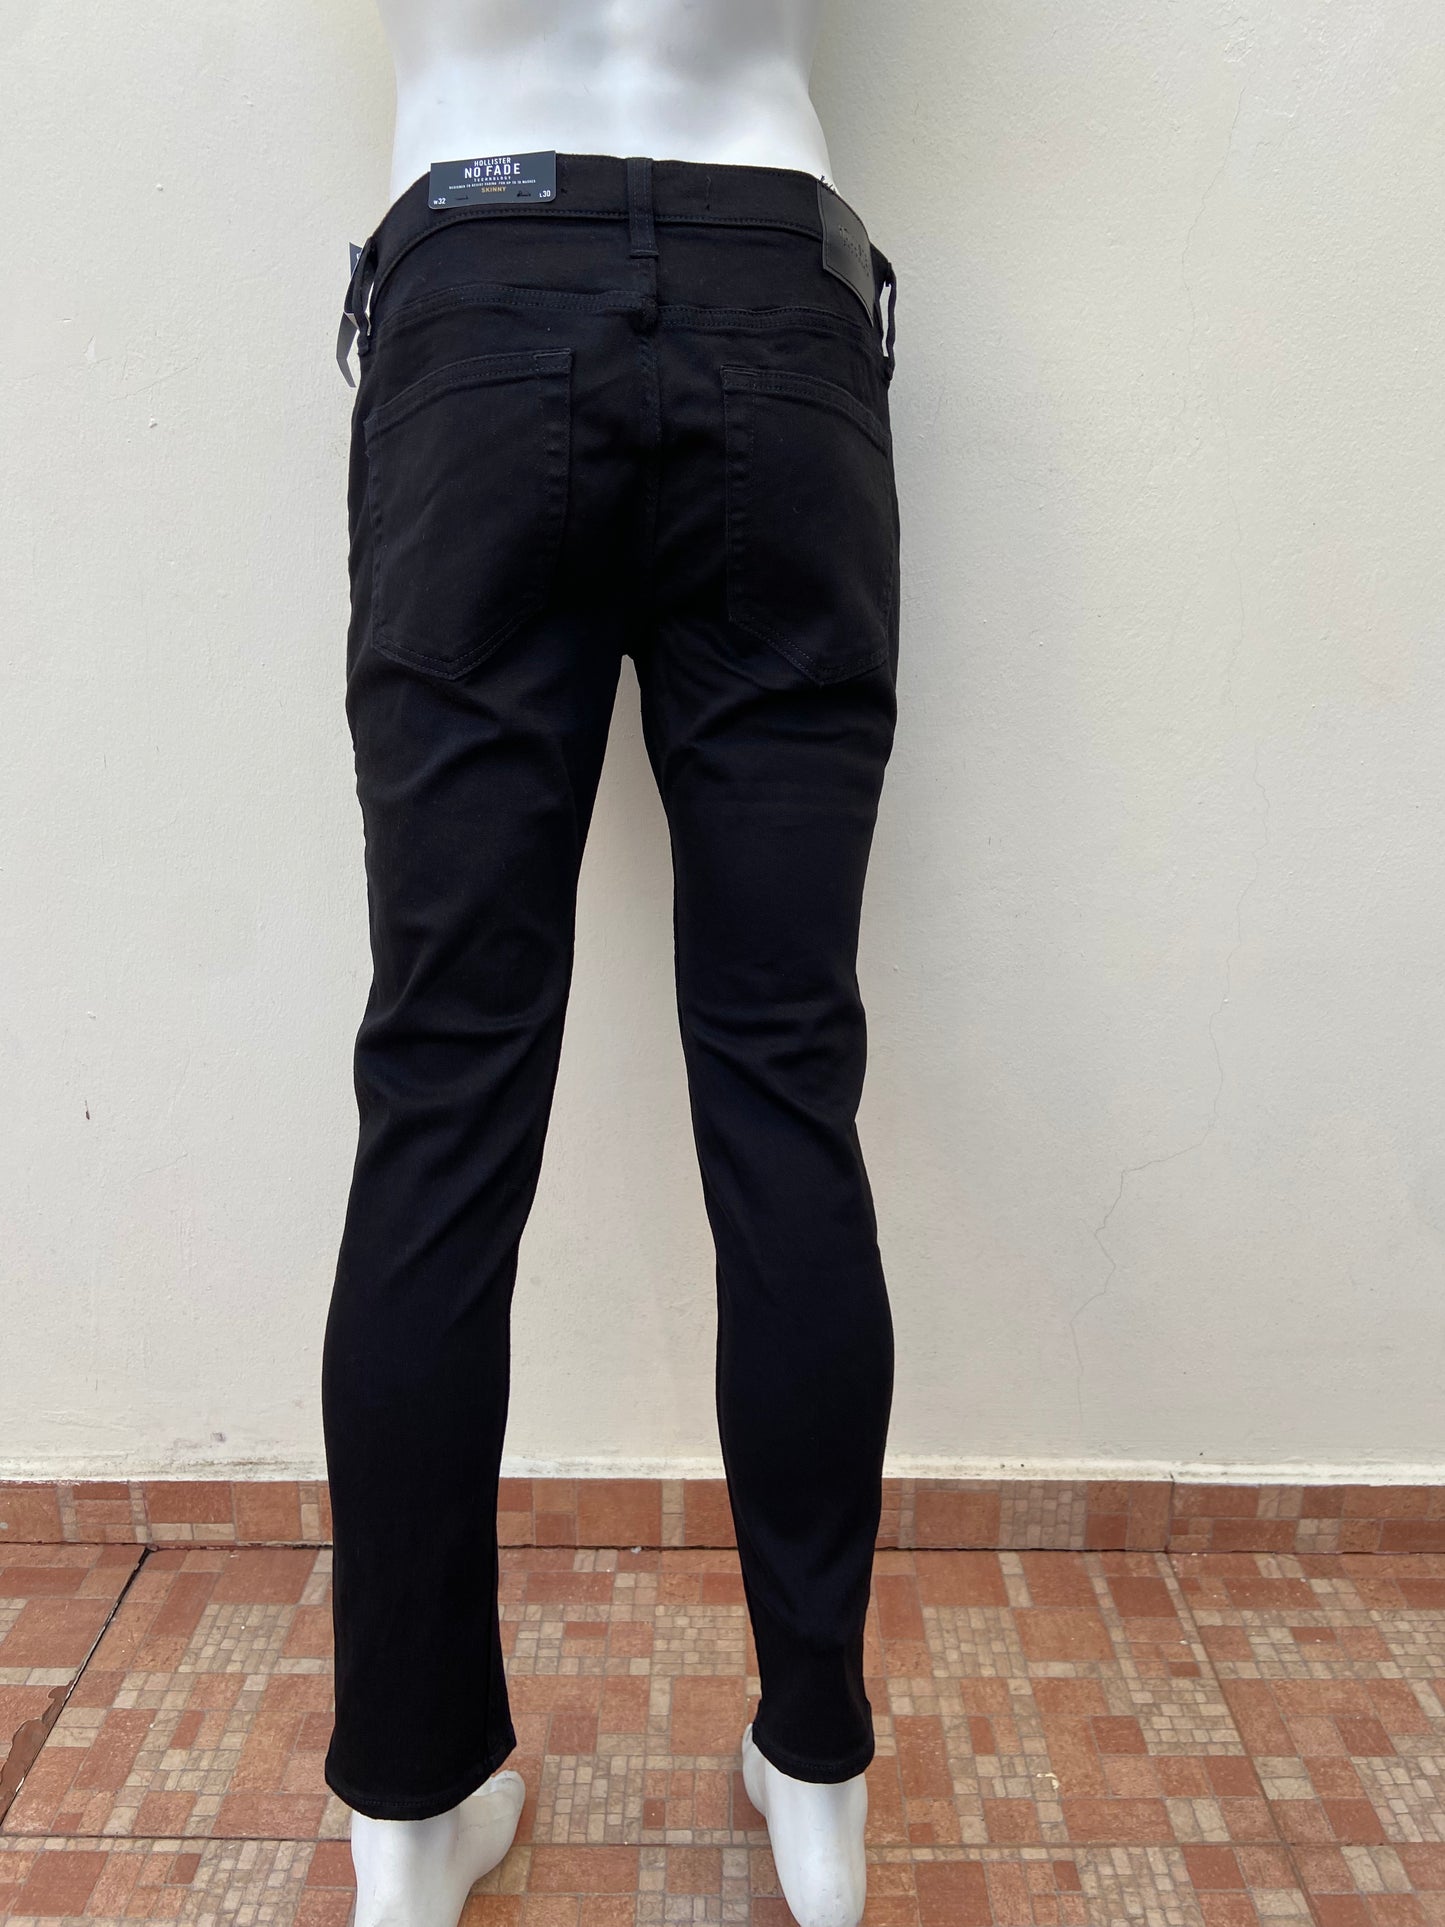 Pantalon Hollister original negro liso NO FADE SKINNY